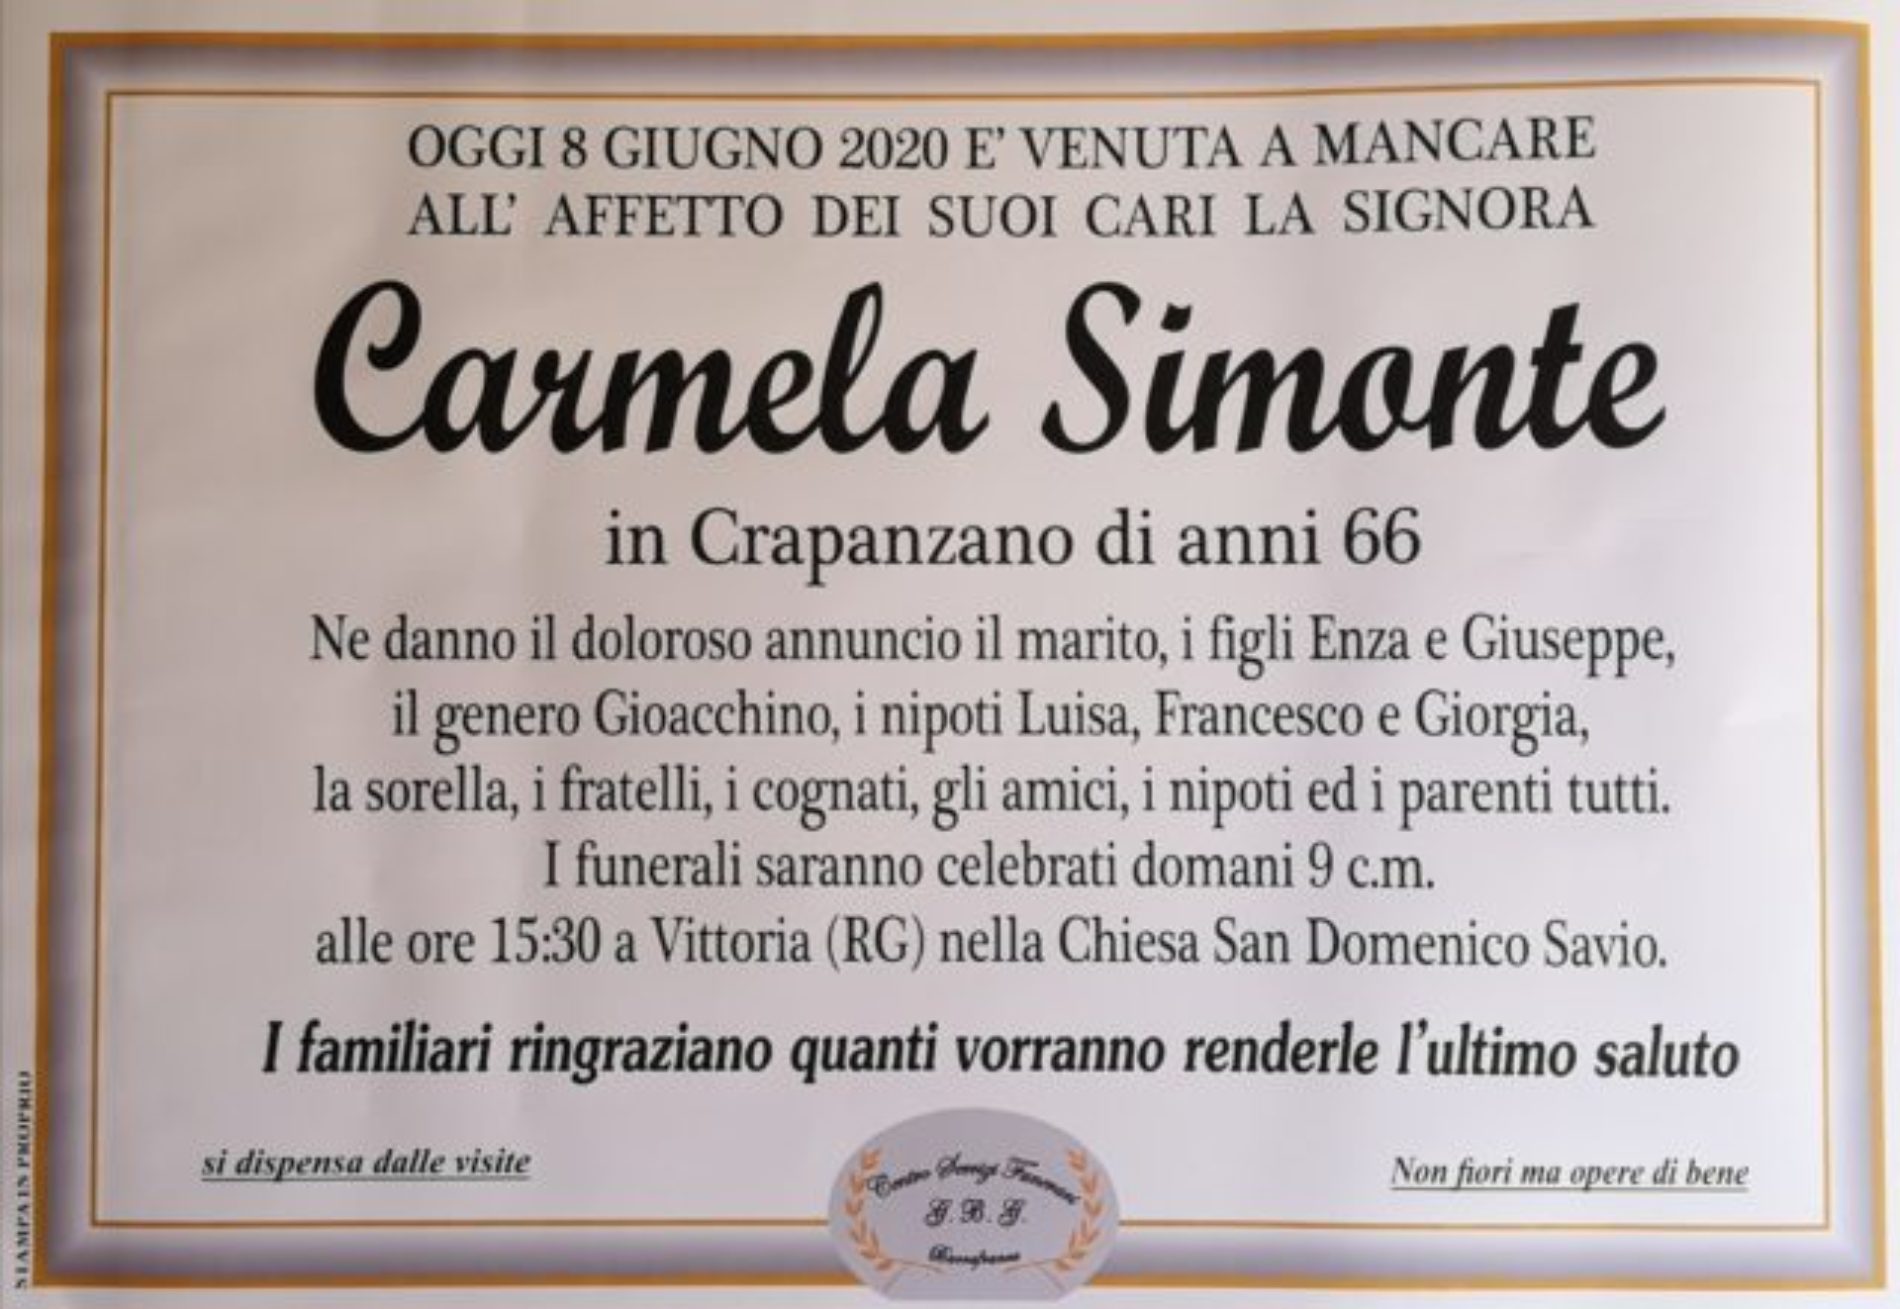 Annuncio Centro servizi funerari G.B.G. Carmela Simonte 66